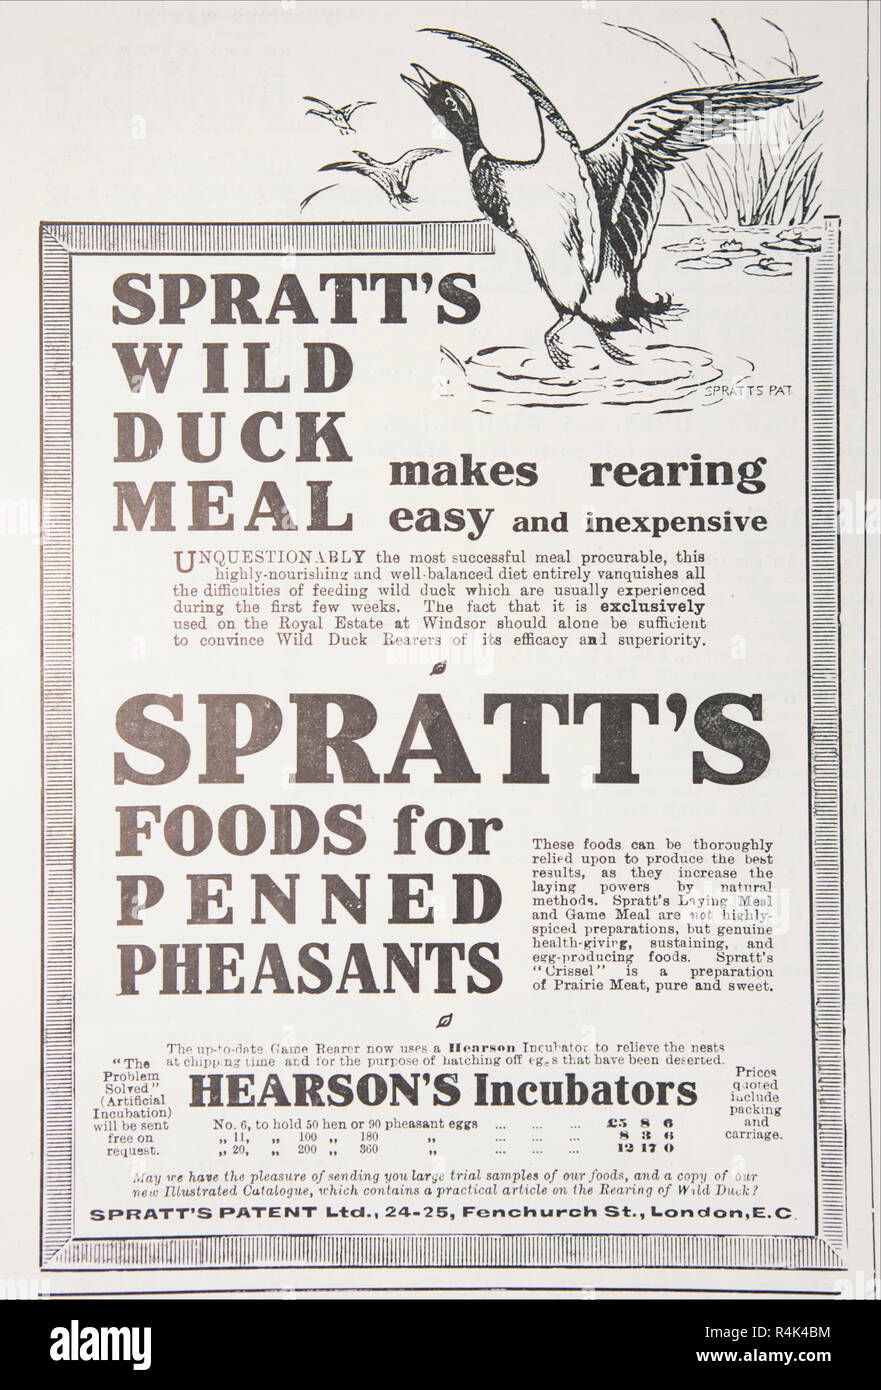 Une vieille publicité pour le faisan et canard Spratt de nourriture. À partir d'un vieux magazine anglais de la période 1914-1918. Banque D'Images